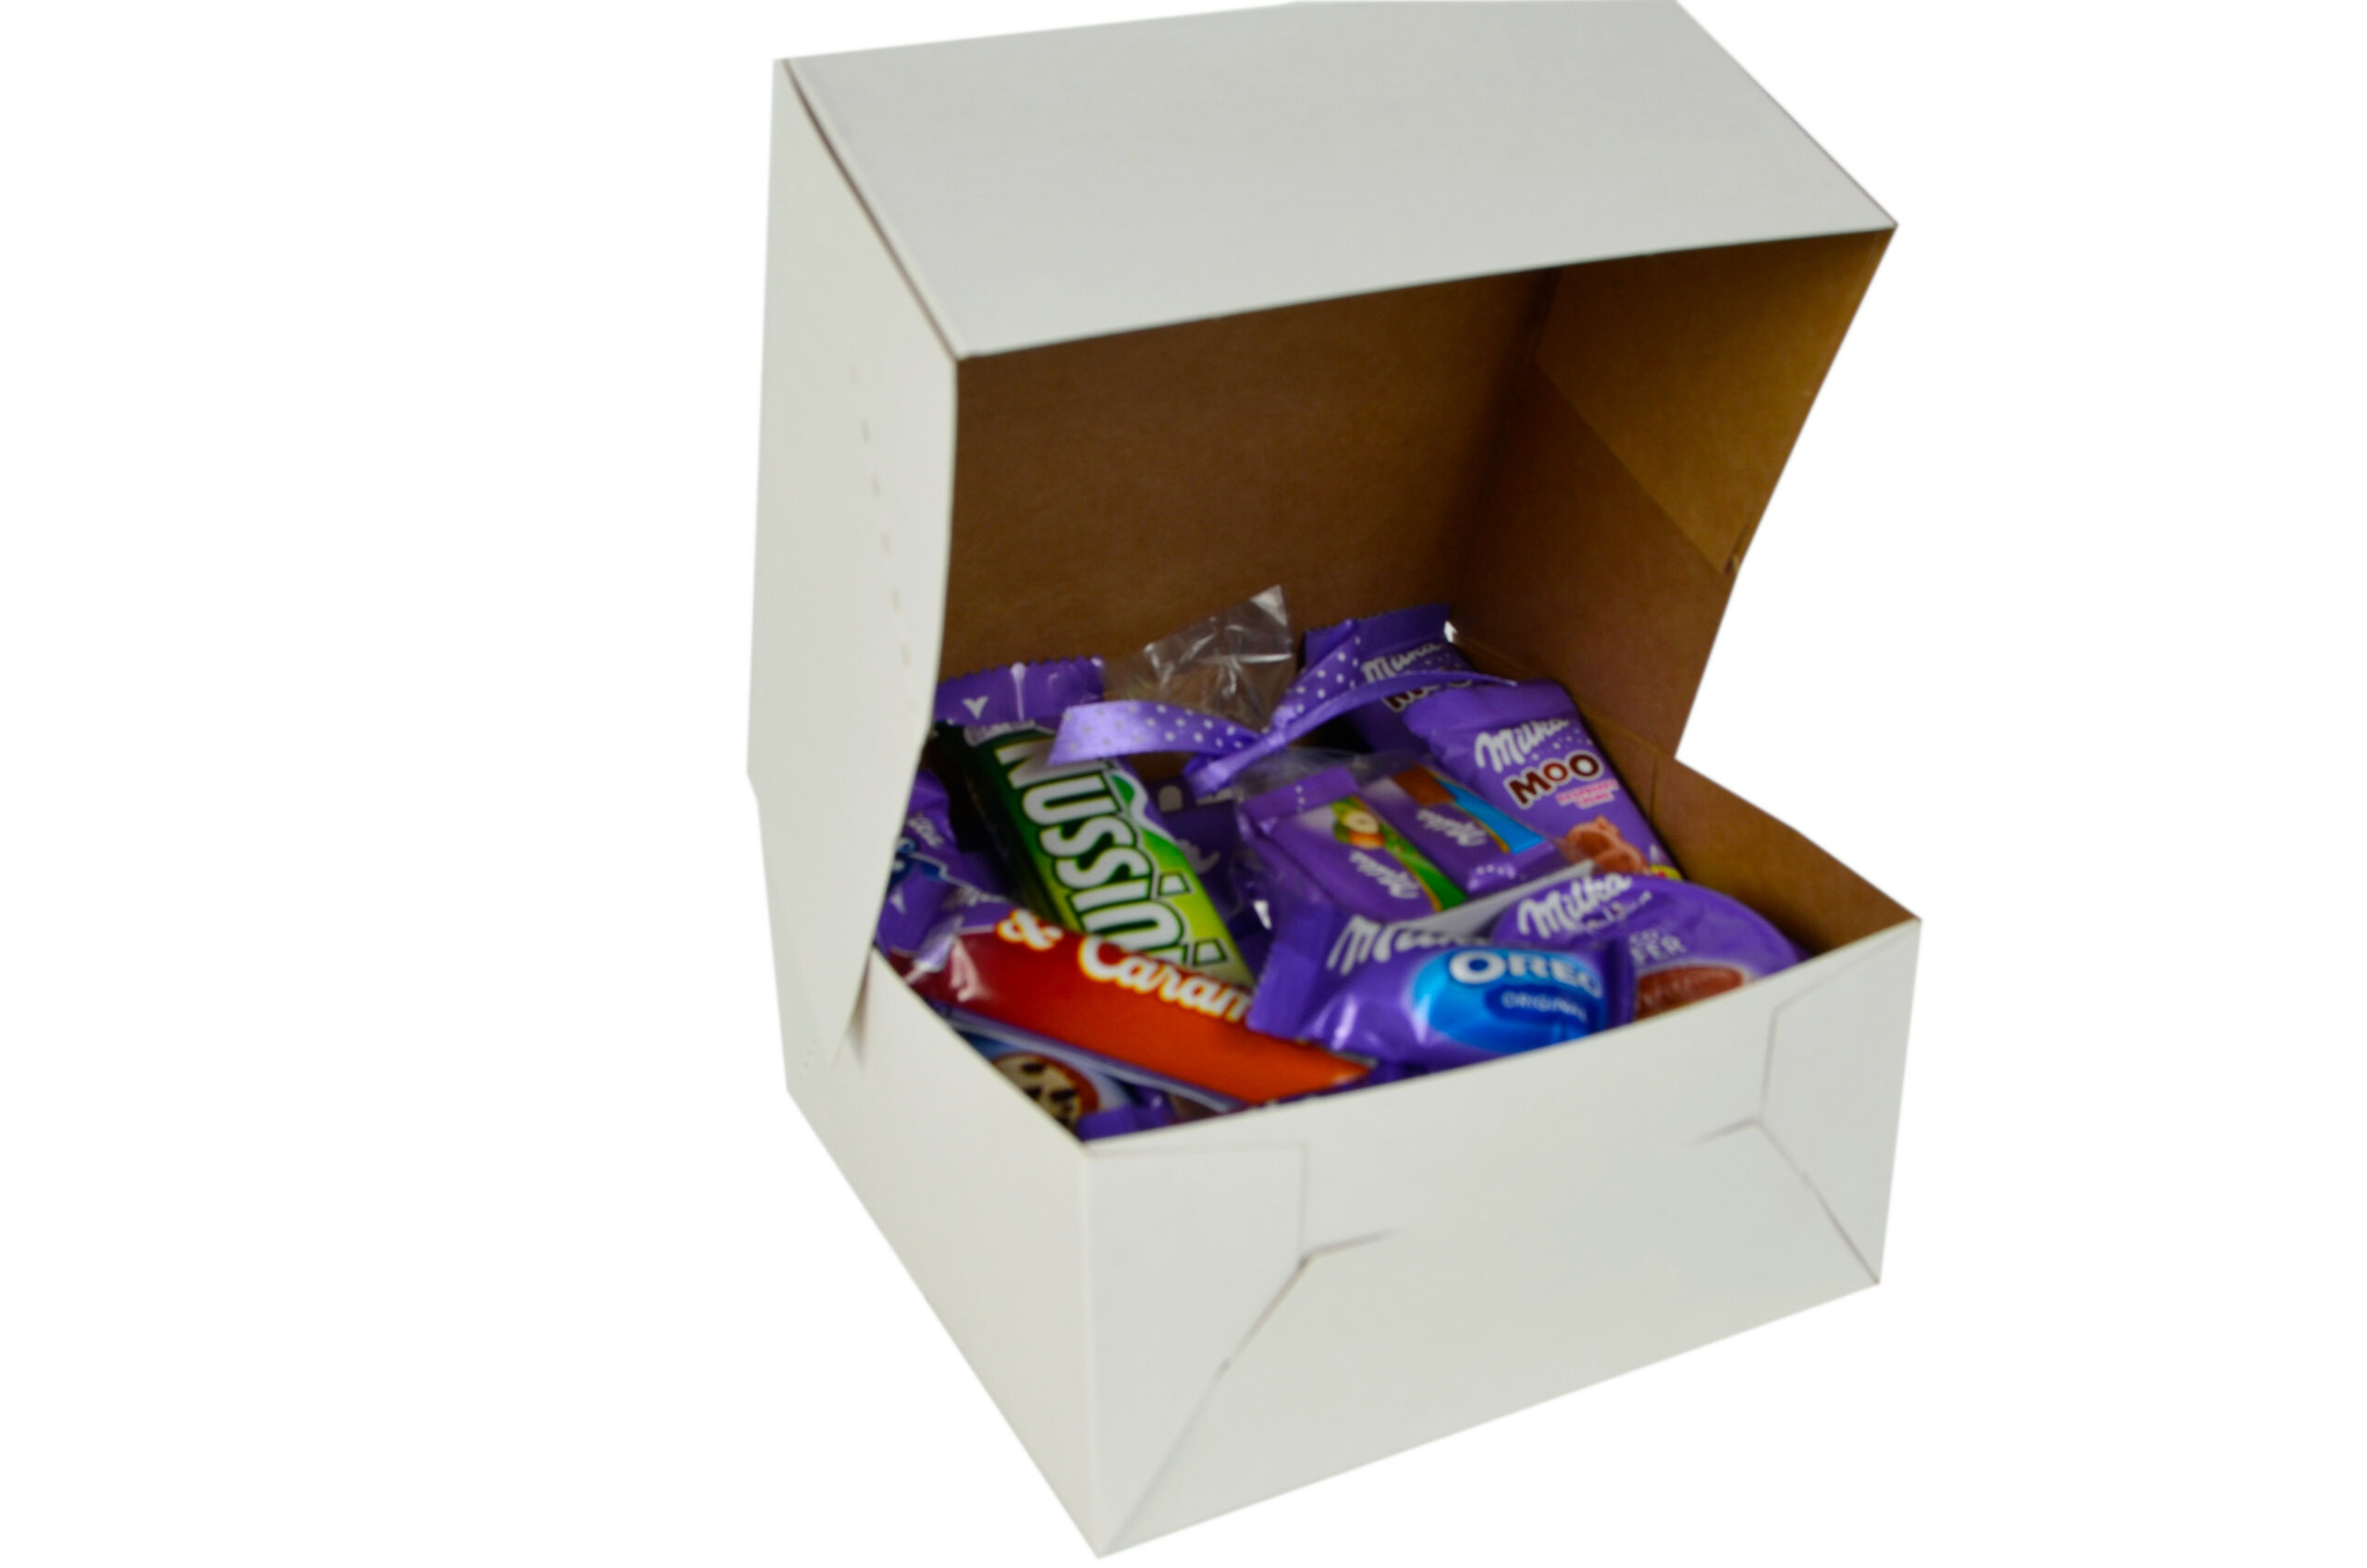 Zestaw słodyczy Milka box prezent na urodziny dla dziecka